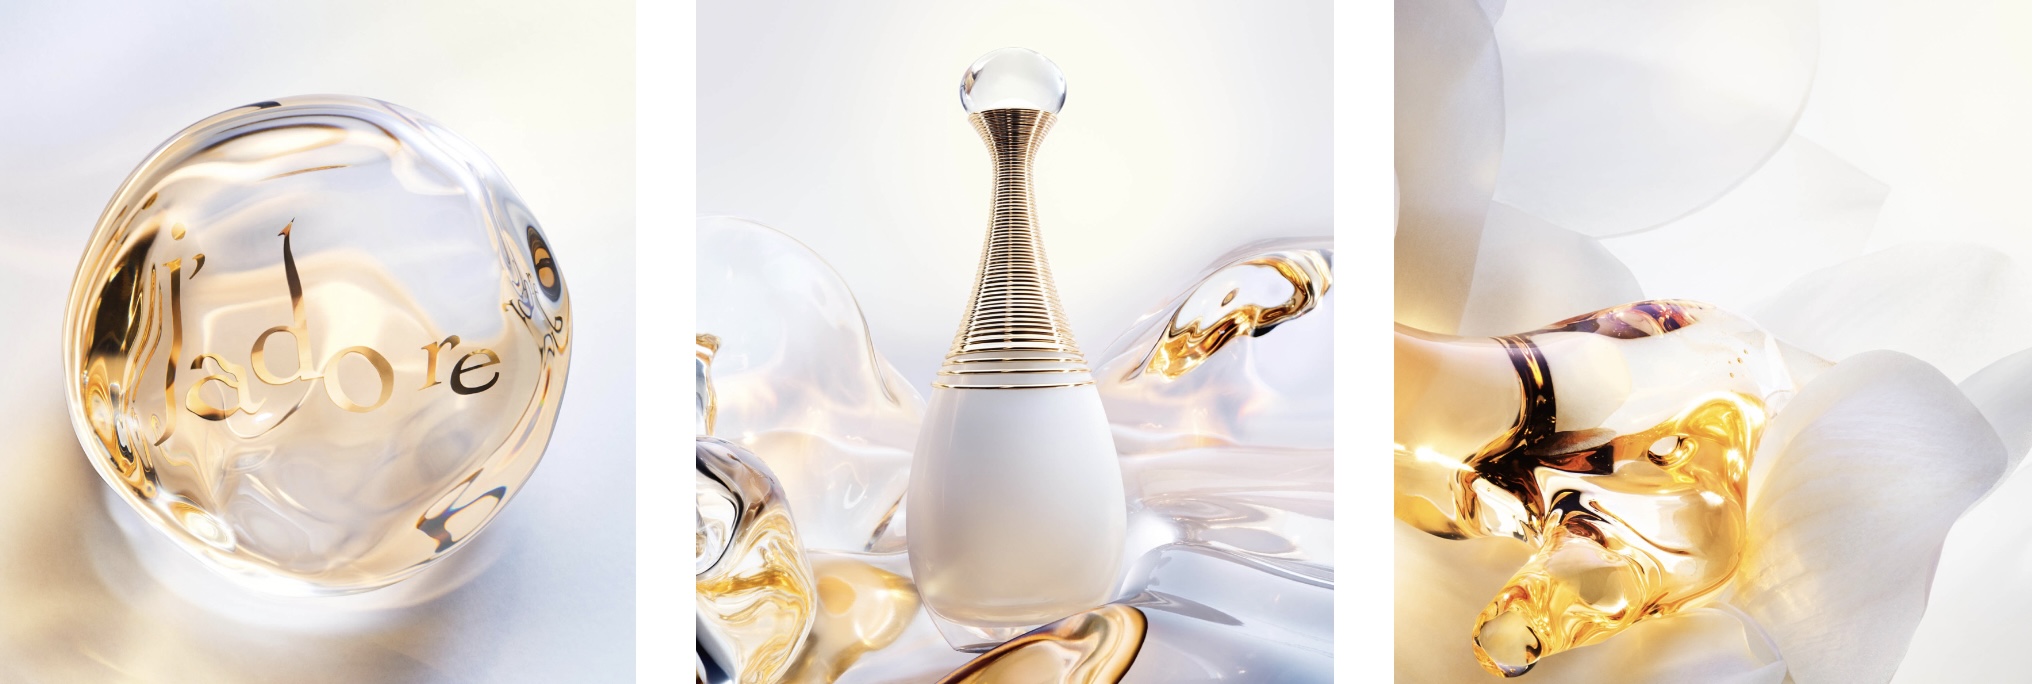 Коллекция Dior J'Adore Parfum D'Eau, осень 2022 г.